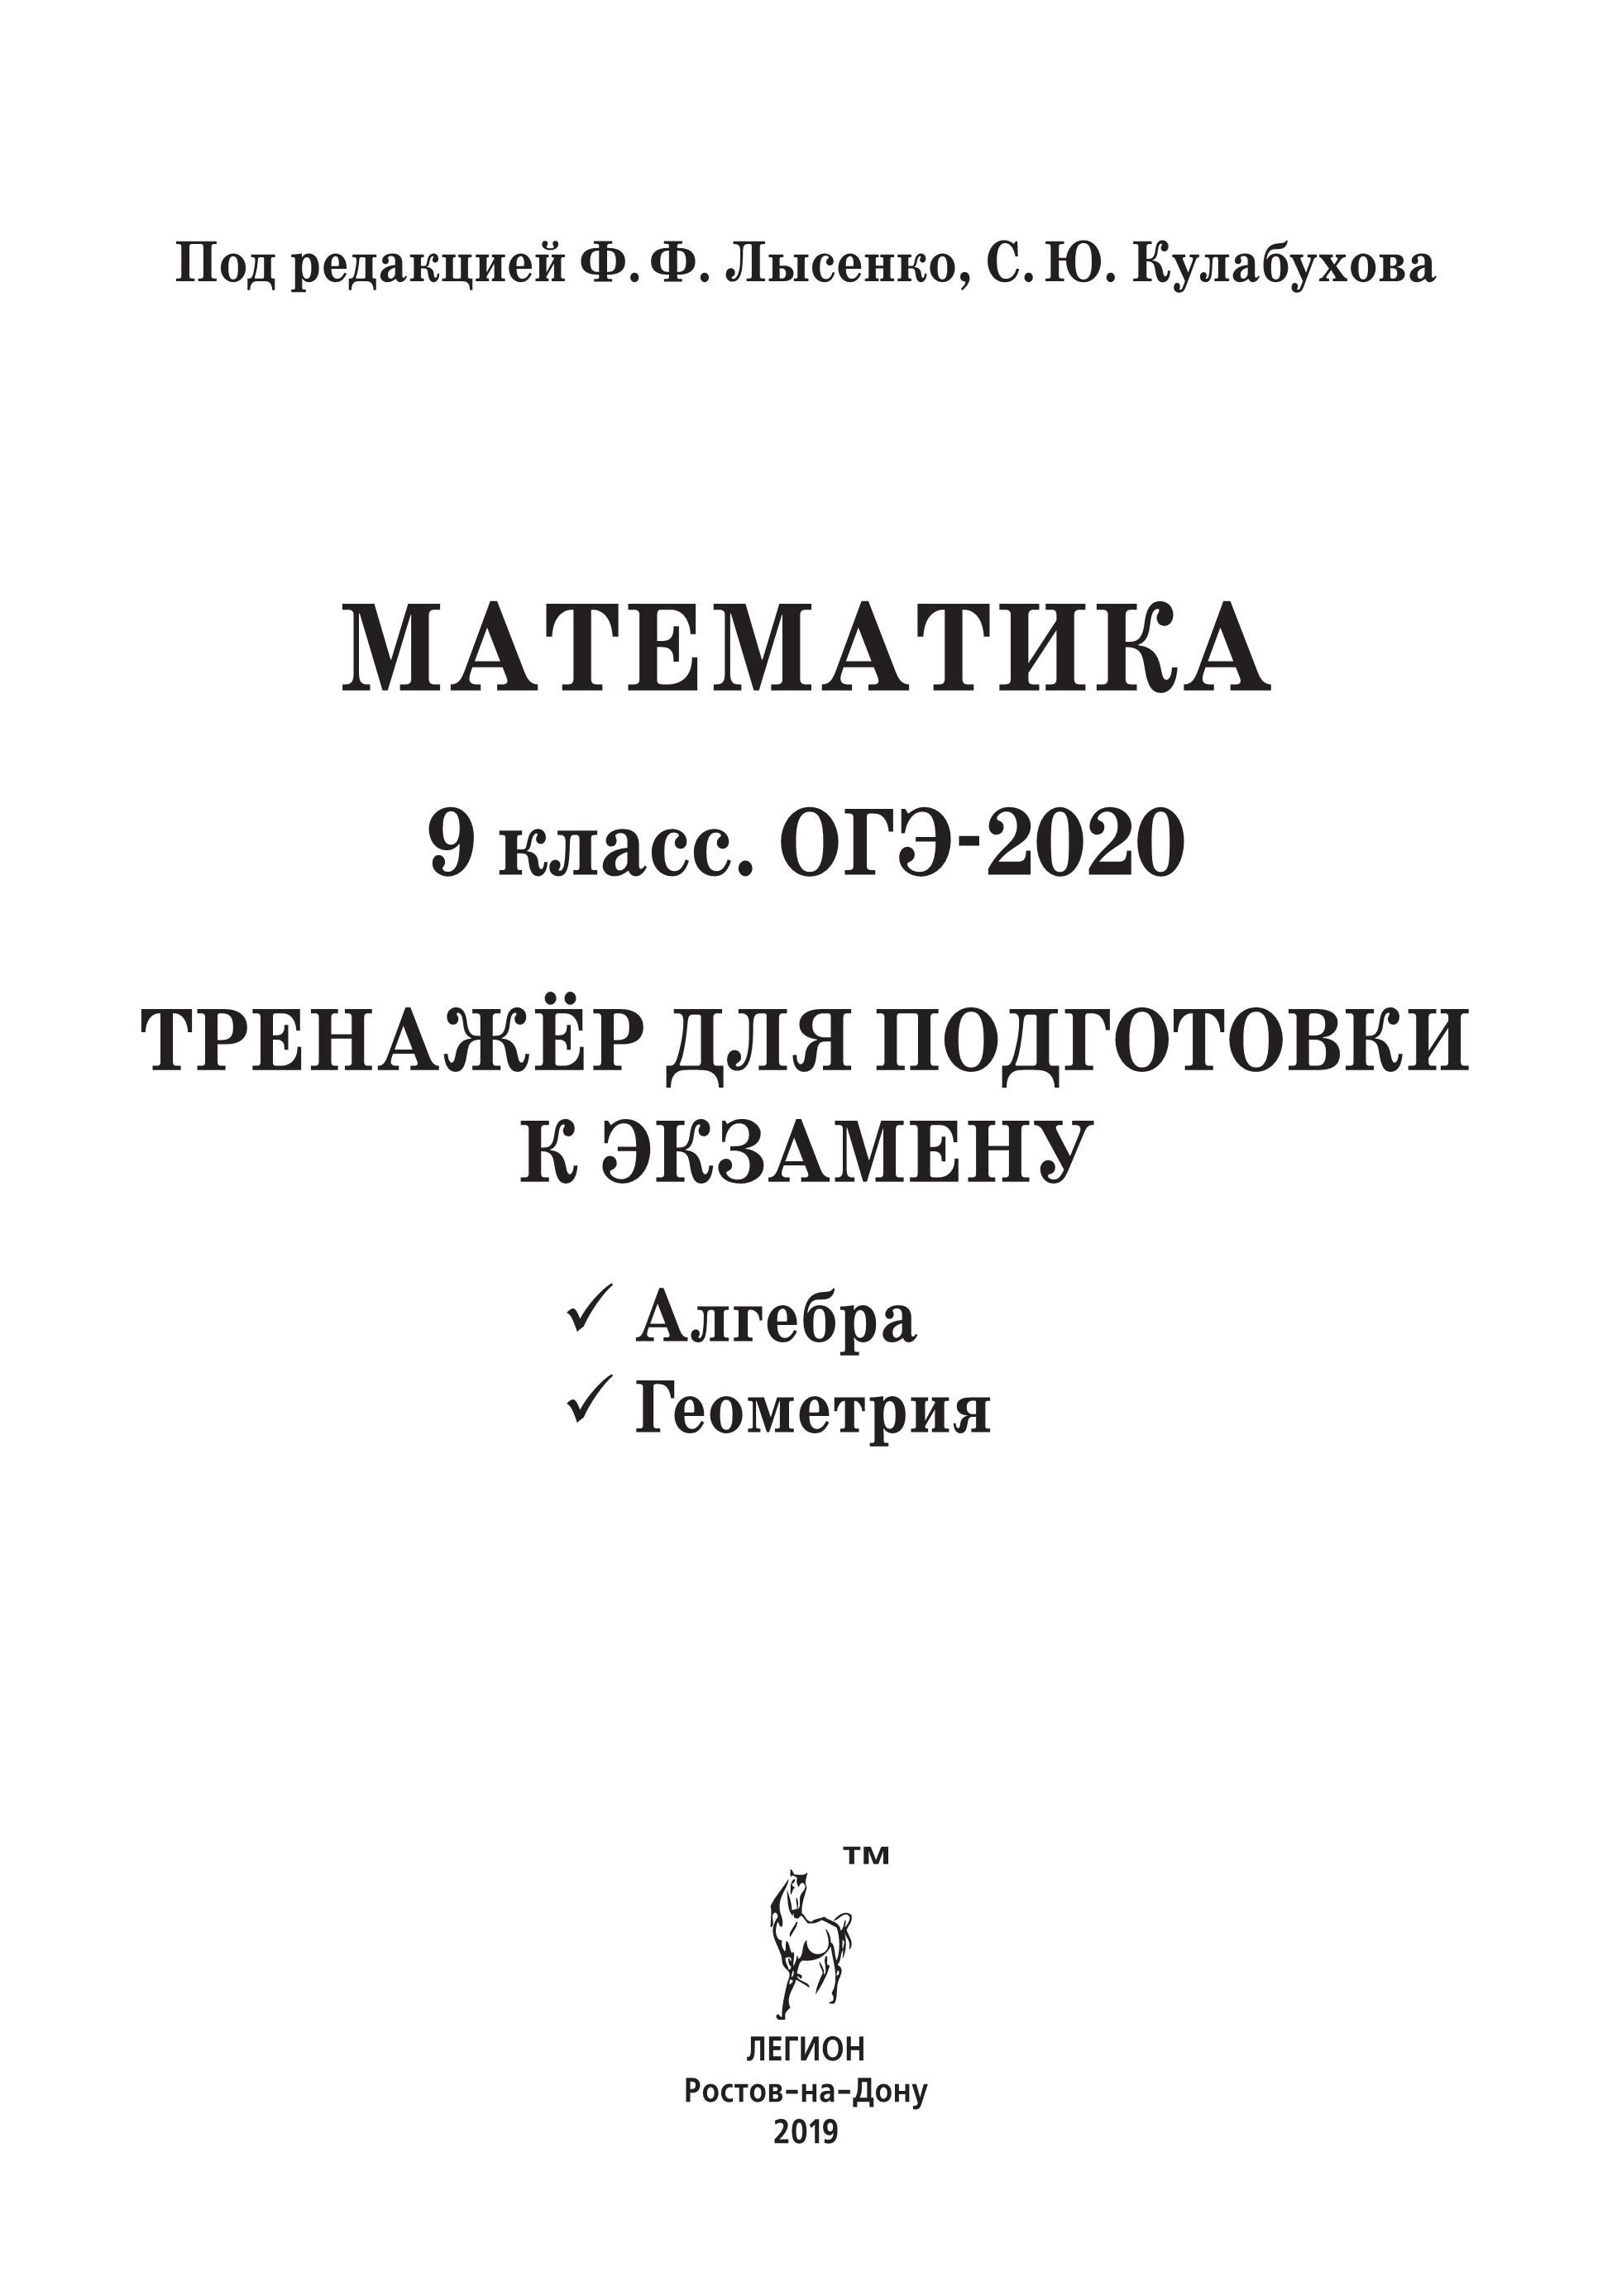 Математика. ОГЭ-2020. 9 класс. Тренажер для подготовки к экзамену. Алгебра, геометрия